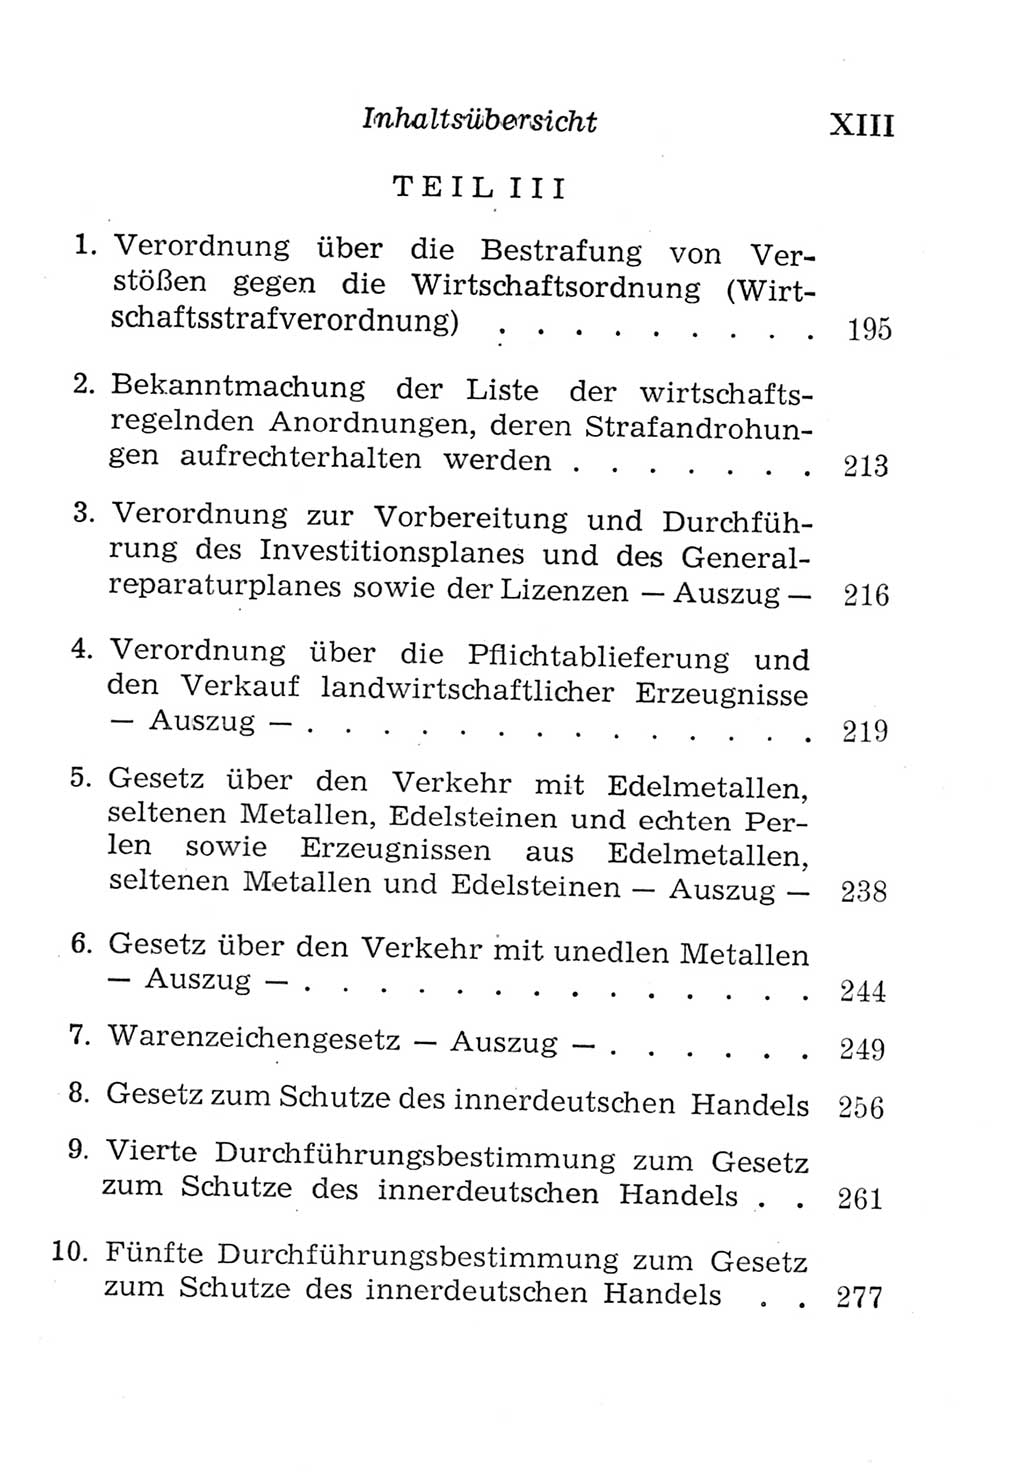 Strafgesetzbuch (StGB) und andere Strafgesetze [Deutsche Demokratische Republik (DDR)] 1957, Seite 13 (Einl. StGB Strafges. DDR 1957, S. 13)